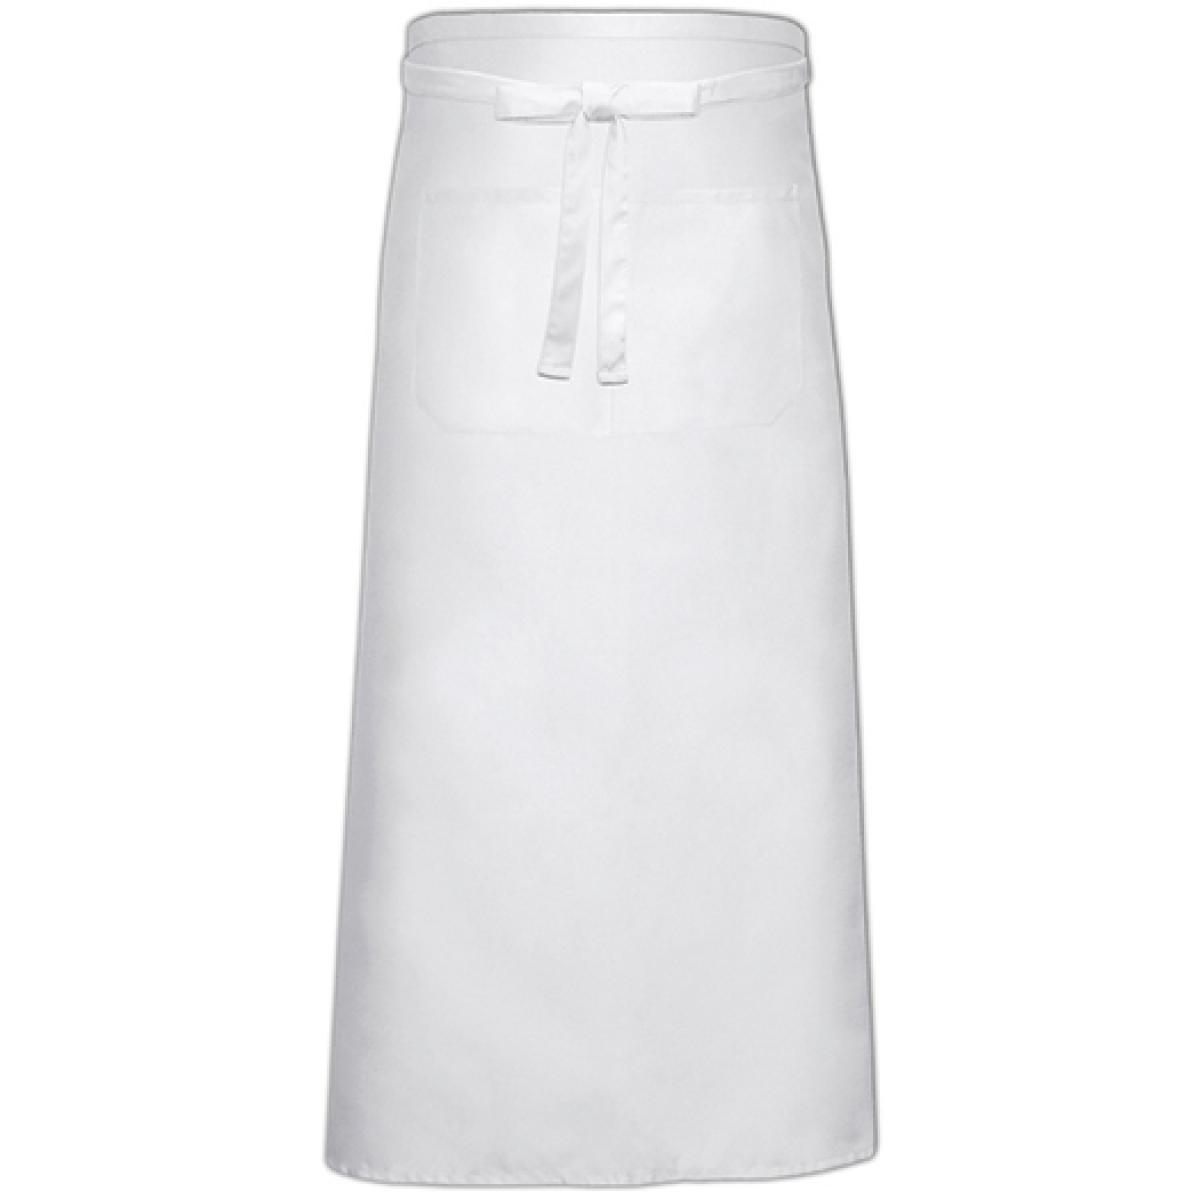 Hersteller: Link Kitchen Wear Herstellernummer: FS100100 Z Artikelbezeichnung: Bistro Apron with Front Pocket - 100 x 100 cm Farbe: White